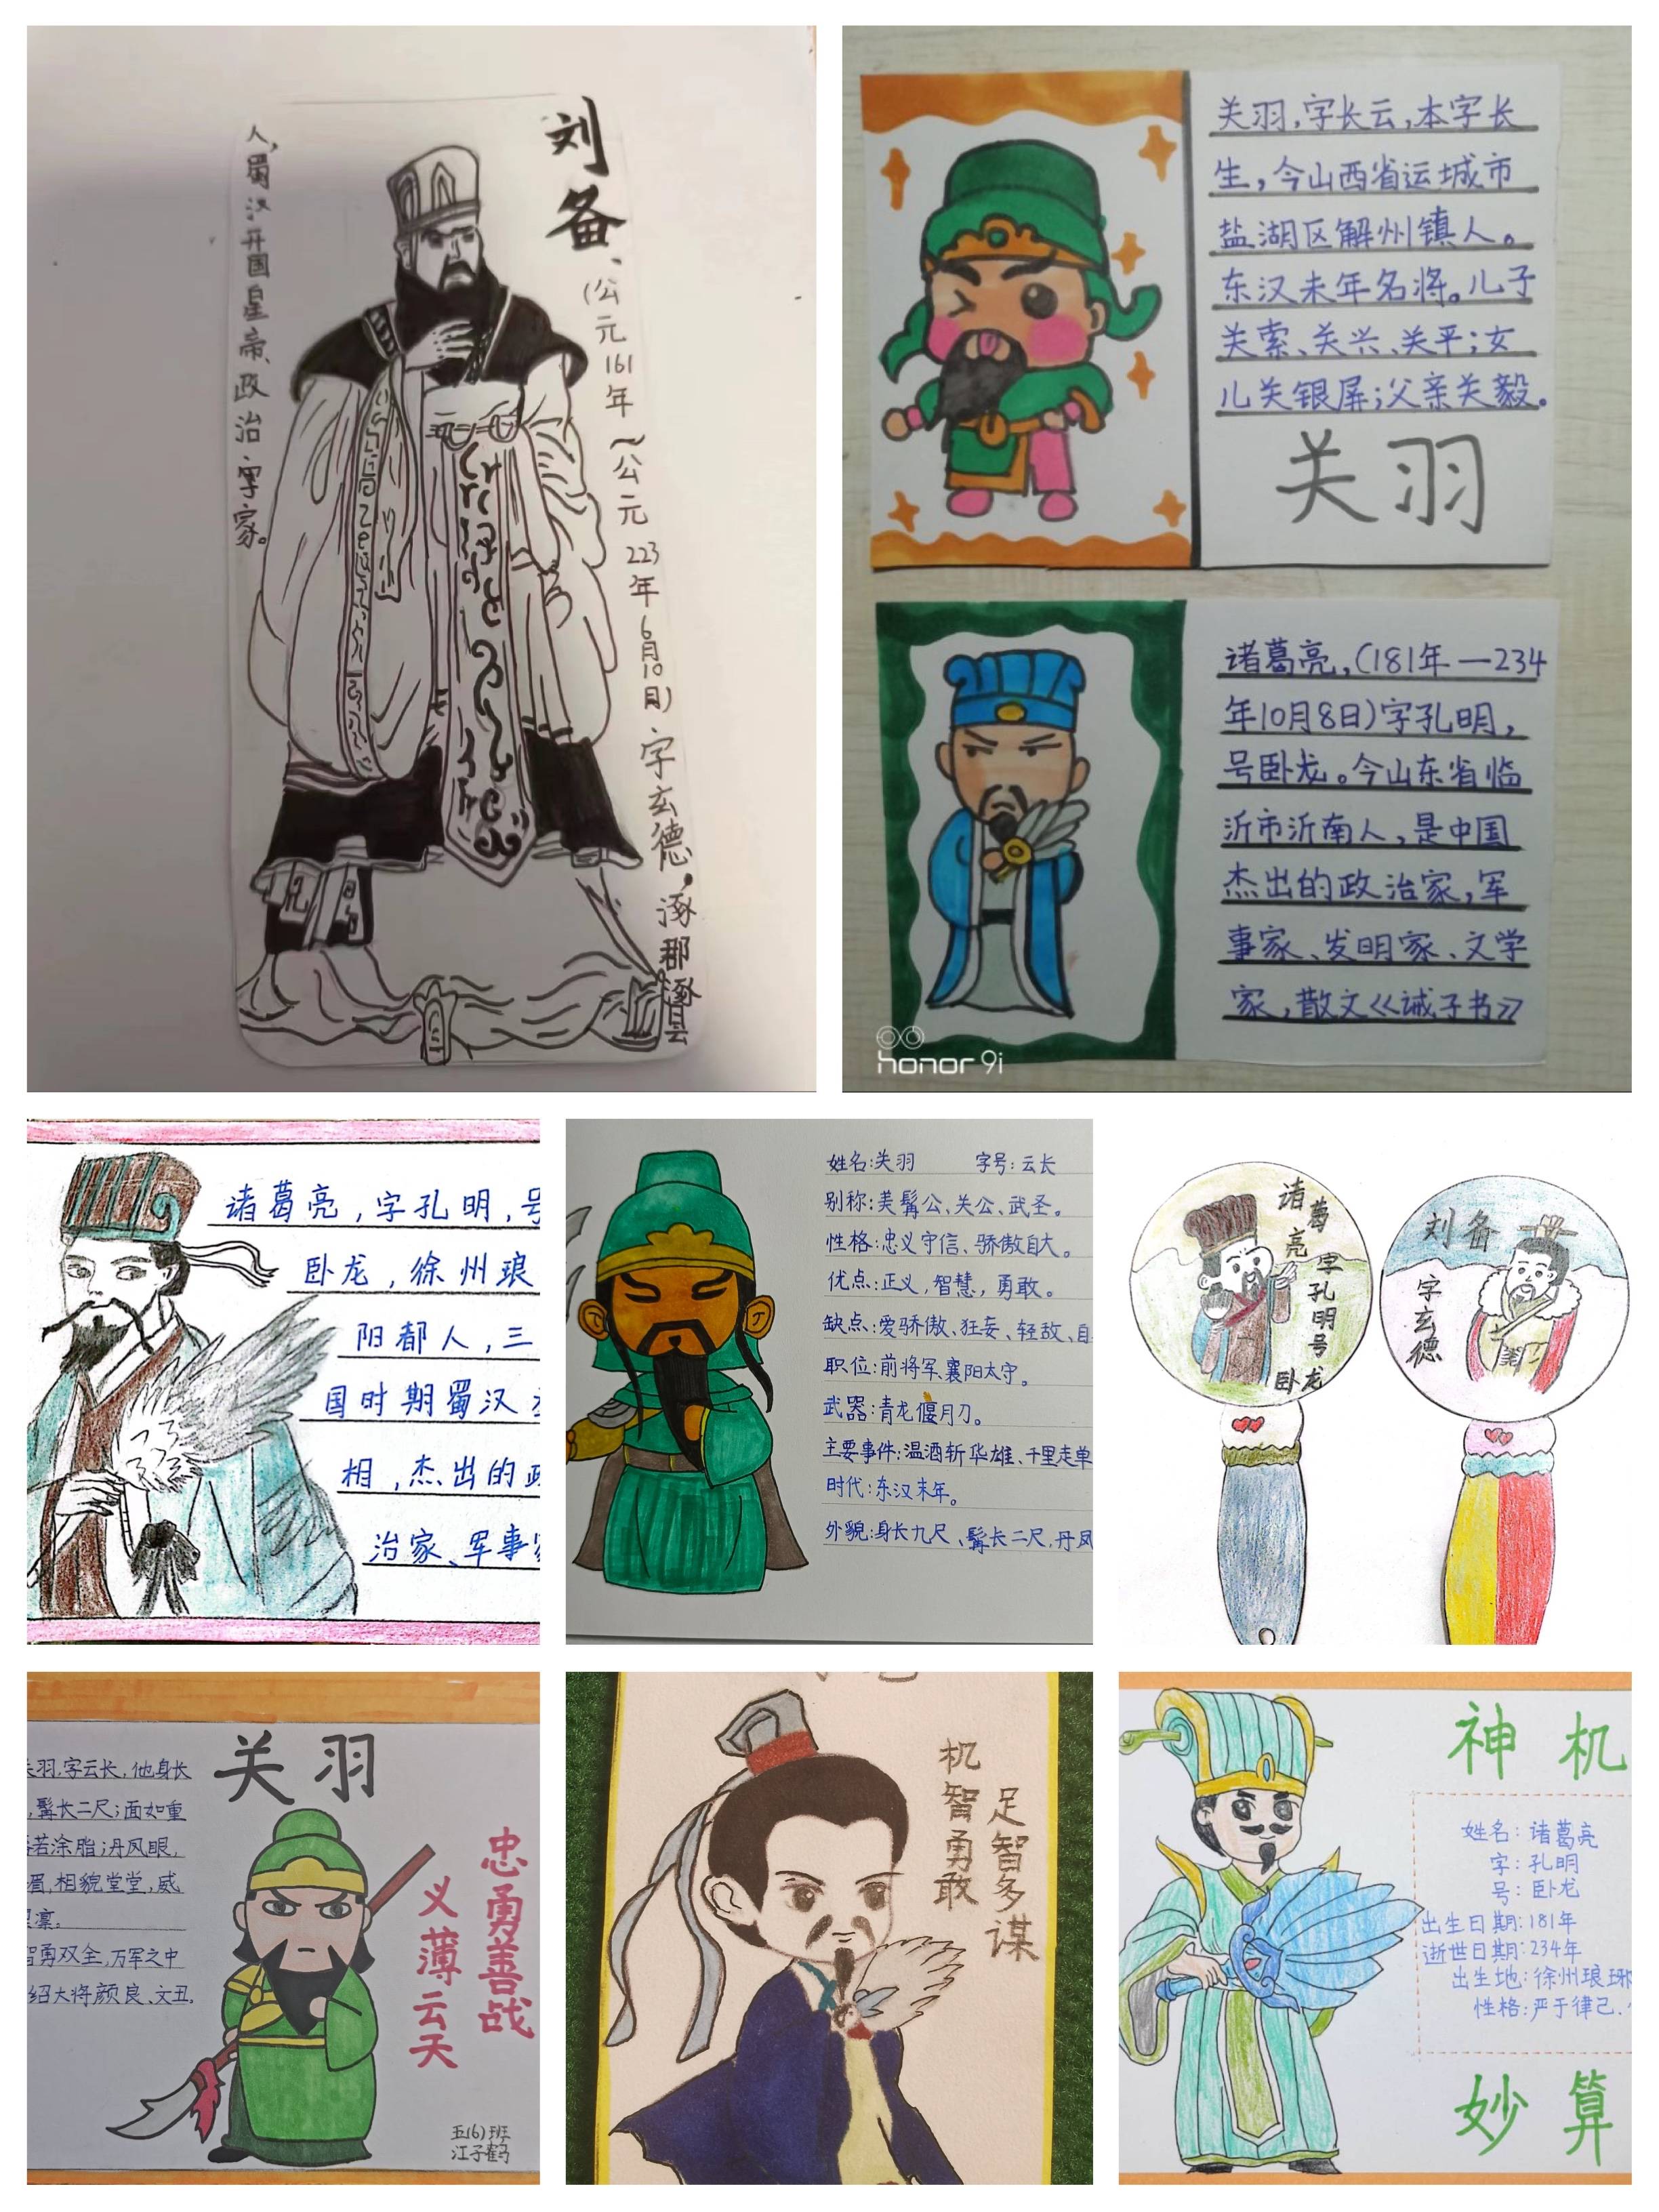 我为三国人物设计名片,名片中有插图,性格特点,相关故事等内容,名片